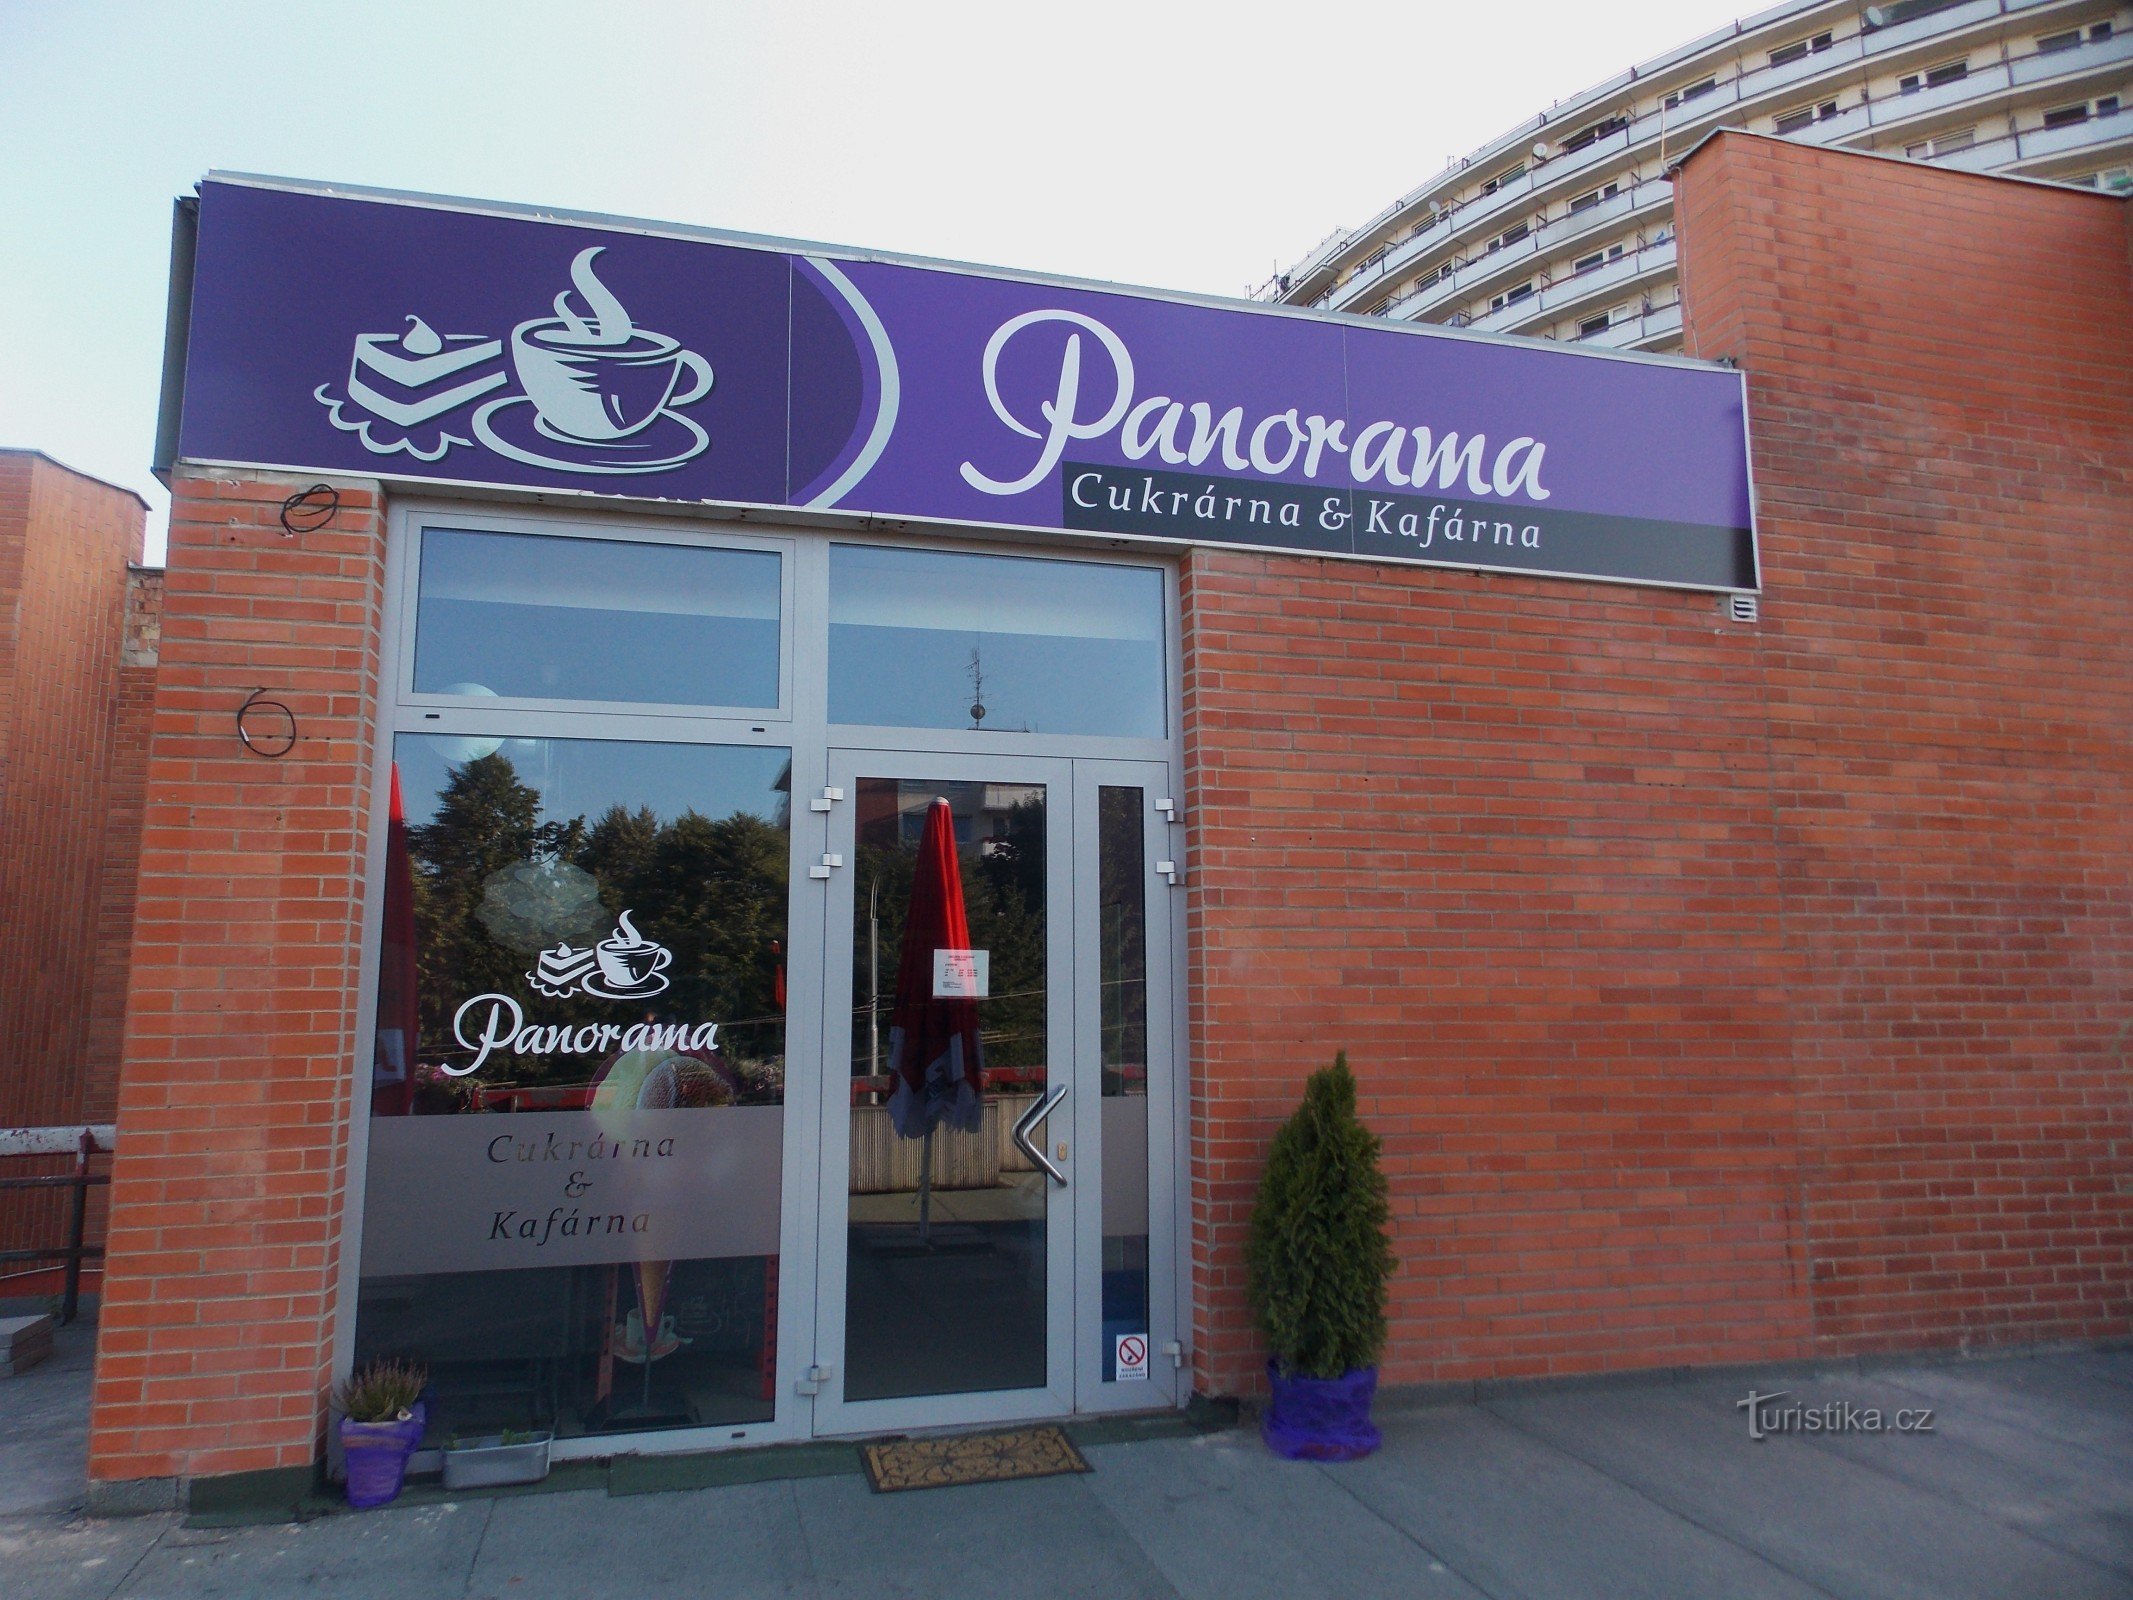 Zoetwaren - Café Panorama in Zlín